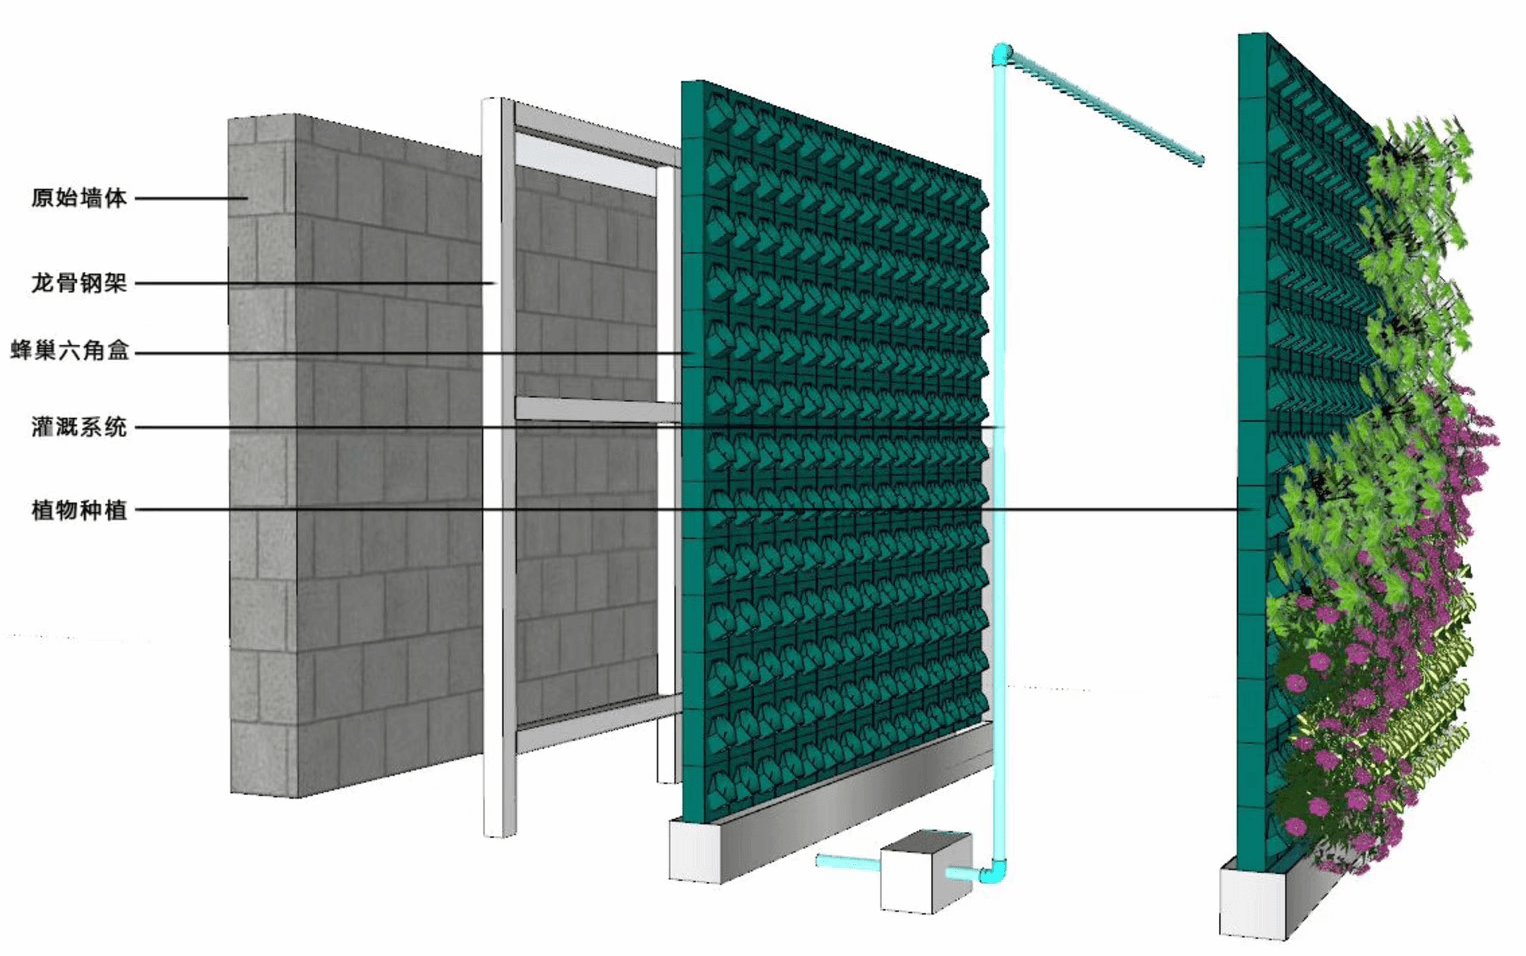 蜂巢系统植物种植容器 - 安装结构示意图